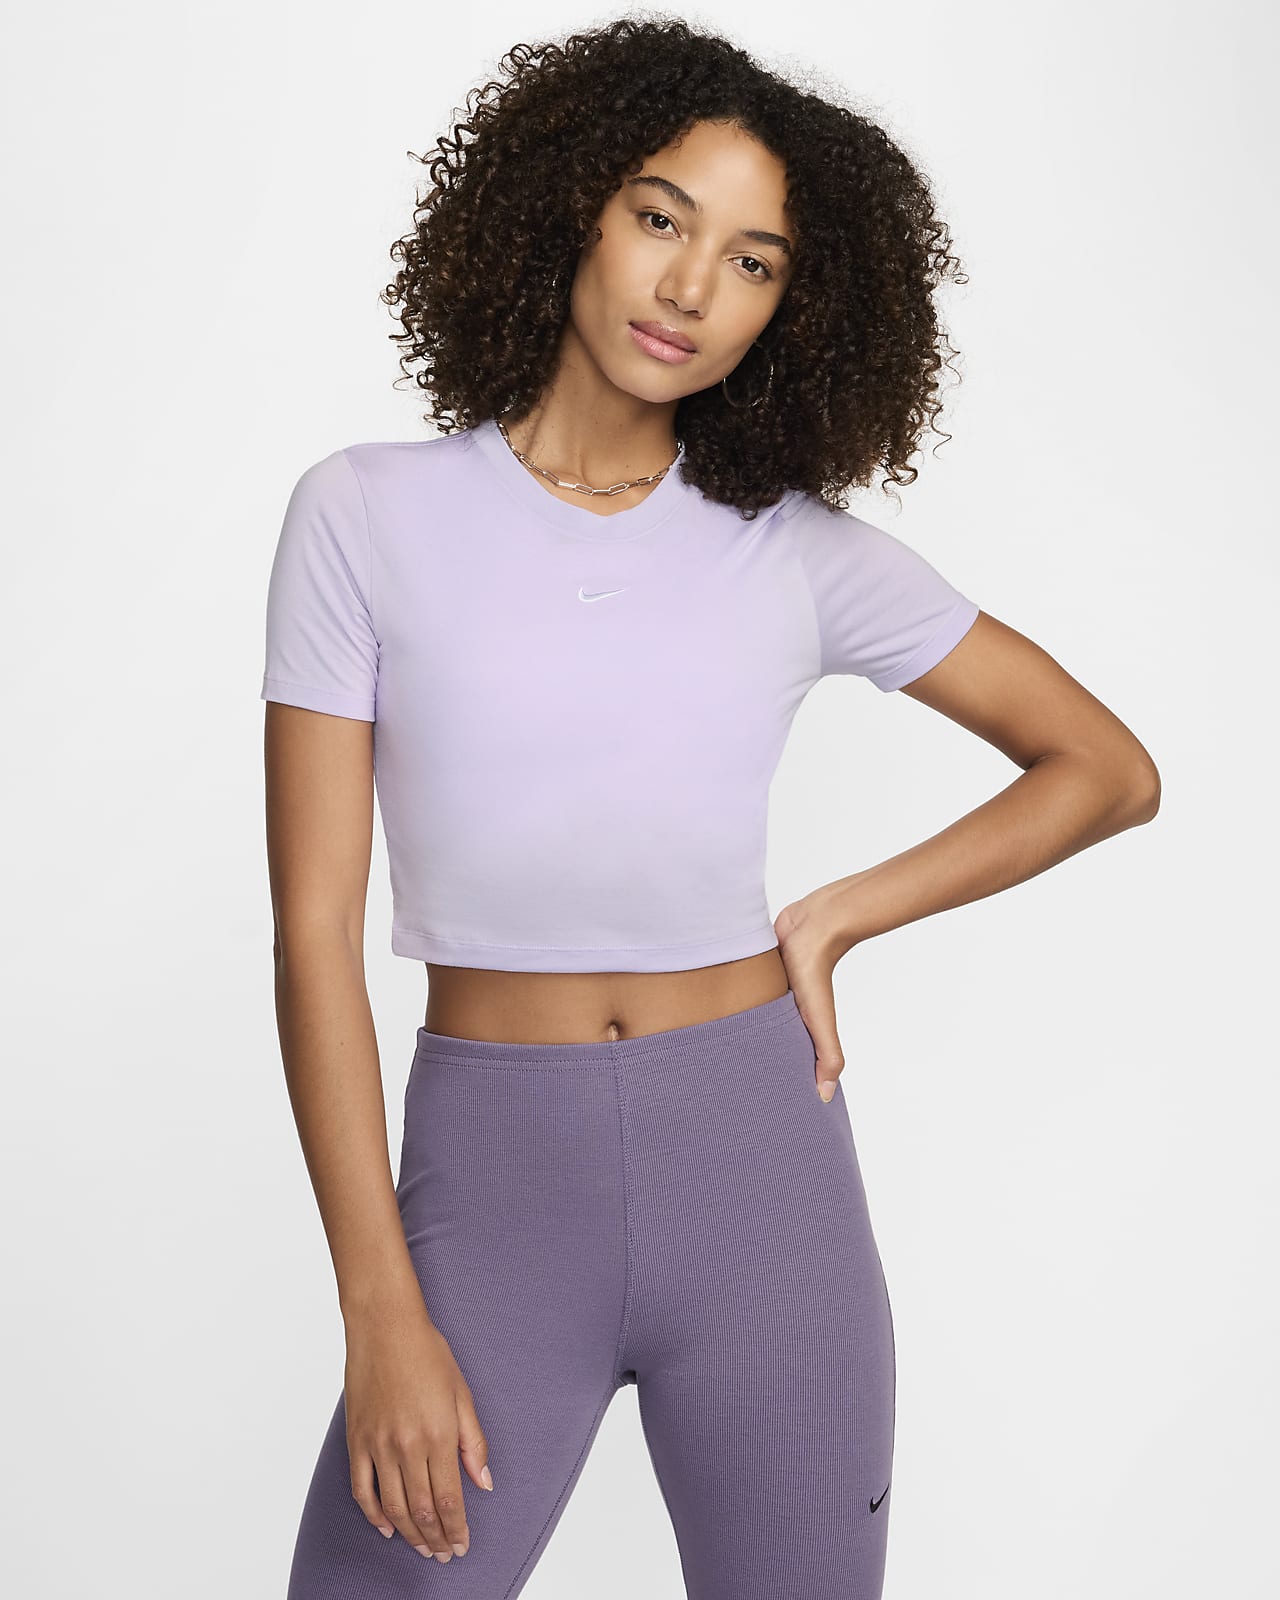 Γυναικείο T-Shirt σε στενή γραμμή και πιο κοντό μήκος Nike Sportswear Essential